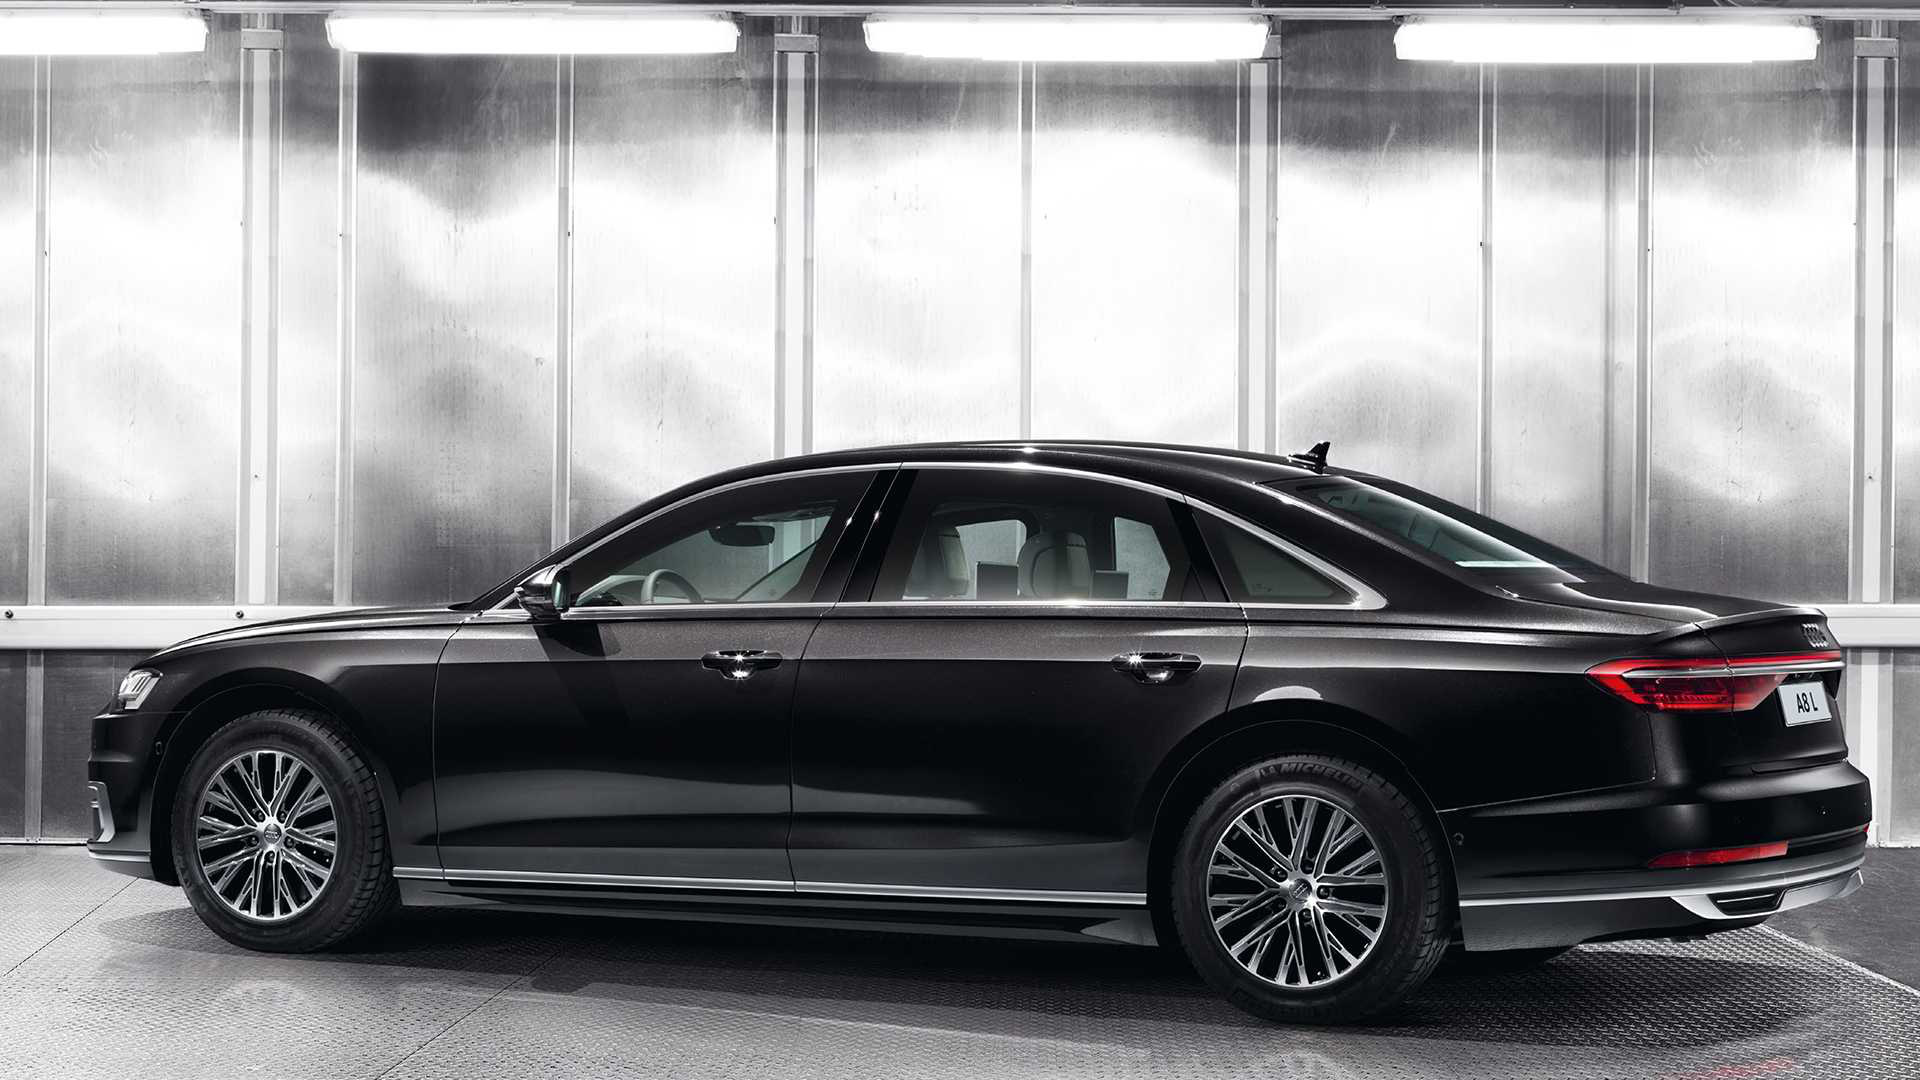 Ra mắt Audi A8 L Security: Bọc thép, khó cháy, chống đạn, khử độc, bảo vệ khách VIP - Ảnh 2.